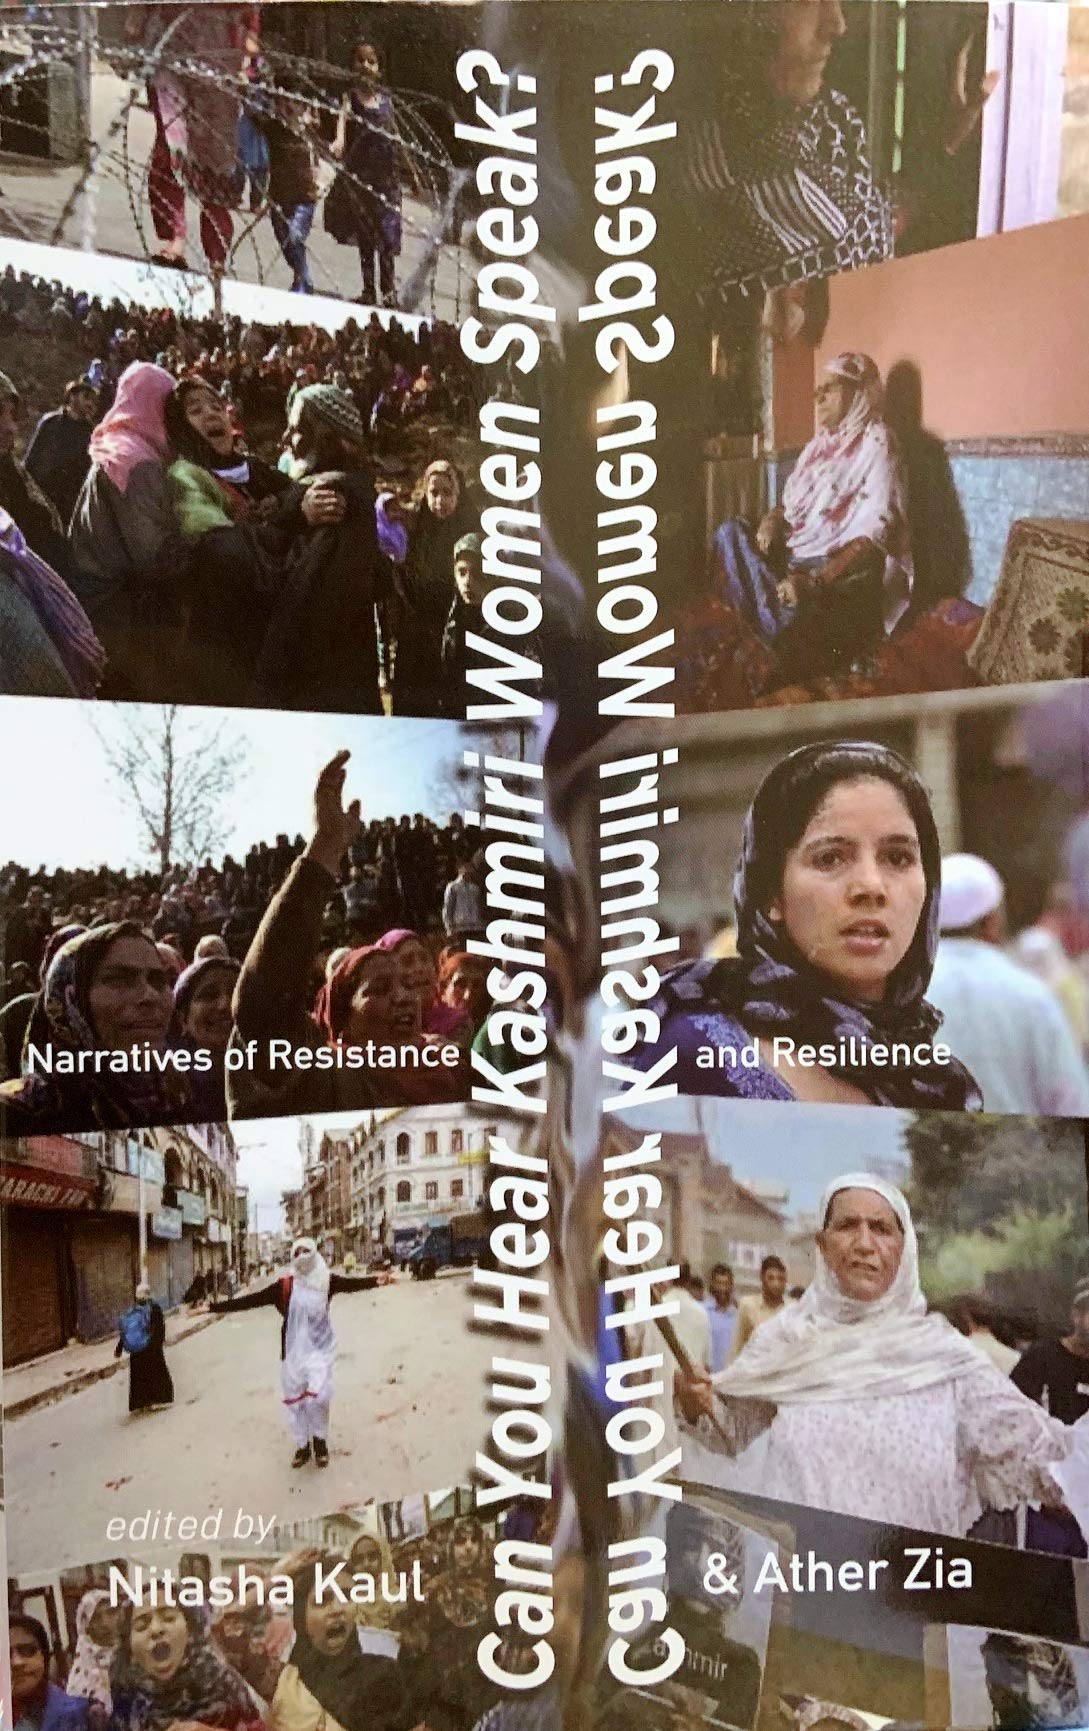 Can You Hear Kashmiri Women Speak?